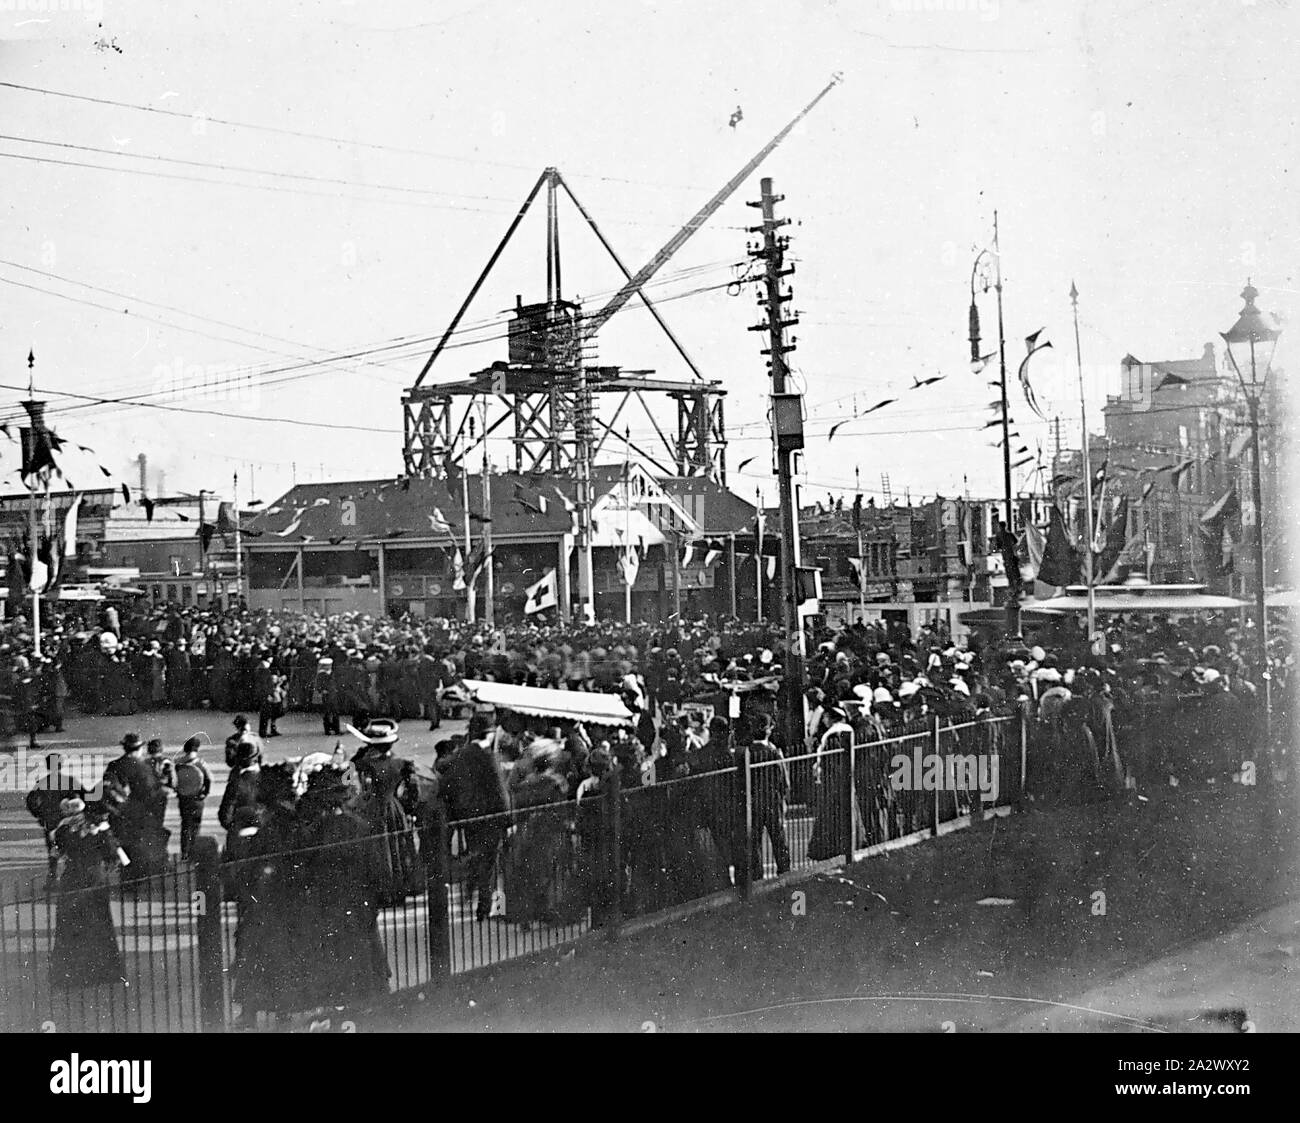 Négatif - Melbourne, Victoria, 1913, la construction de la gare de Flinders Street. Il y a une grande grue sur une plate-forme en arrière-plan. Il y a de grandes foules de Swanston Street et banderoles sur les poteaux Banque D'Images